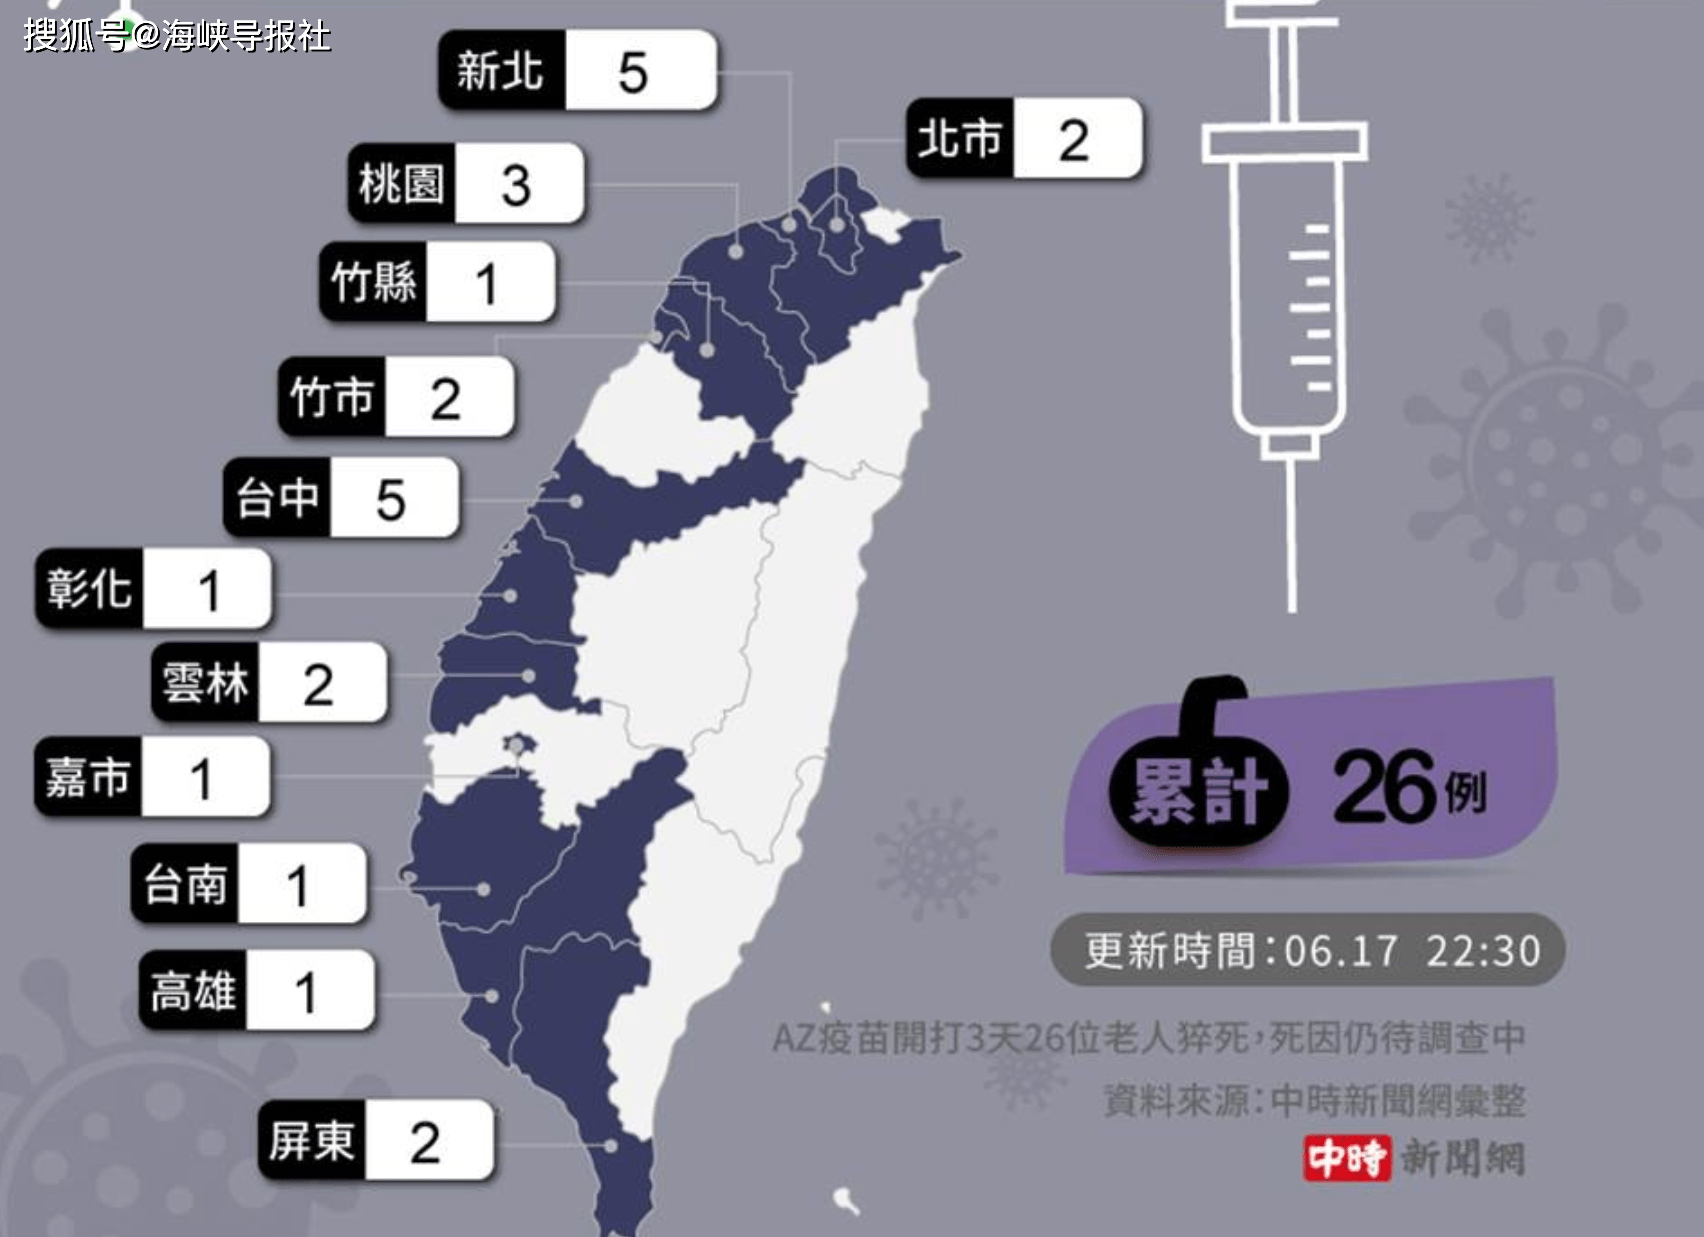 台湾az疫苗开打仅三天已累计26例老人打疫苗后猝死案件 台中